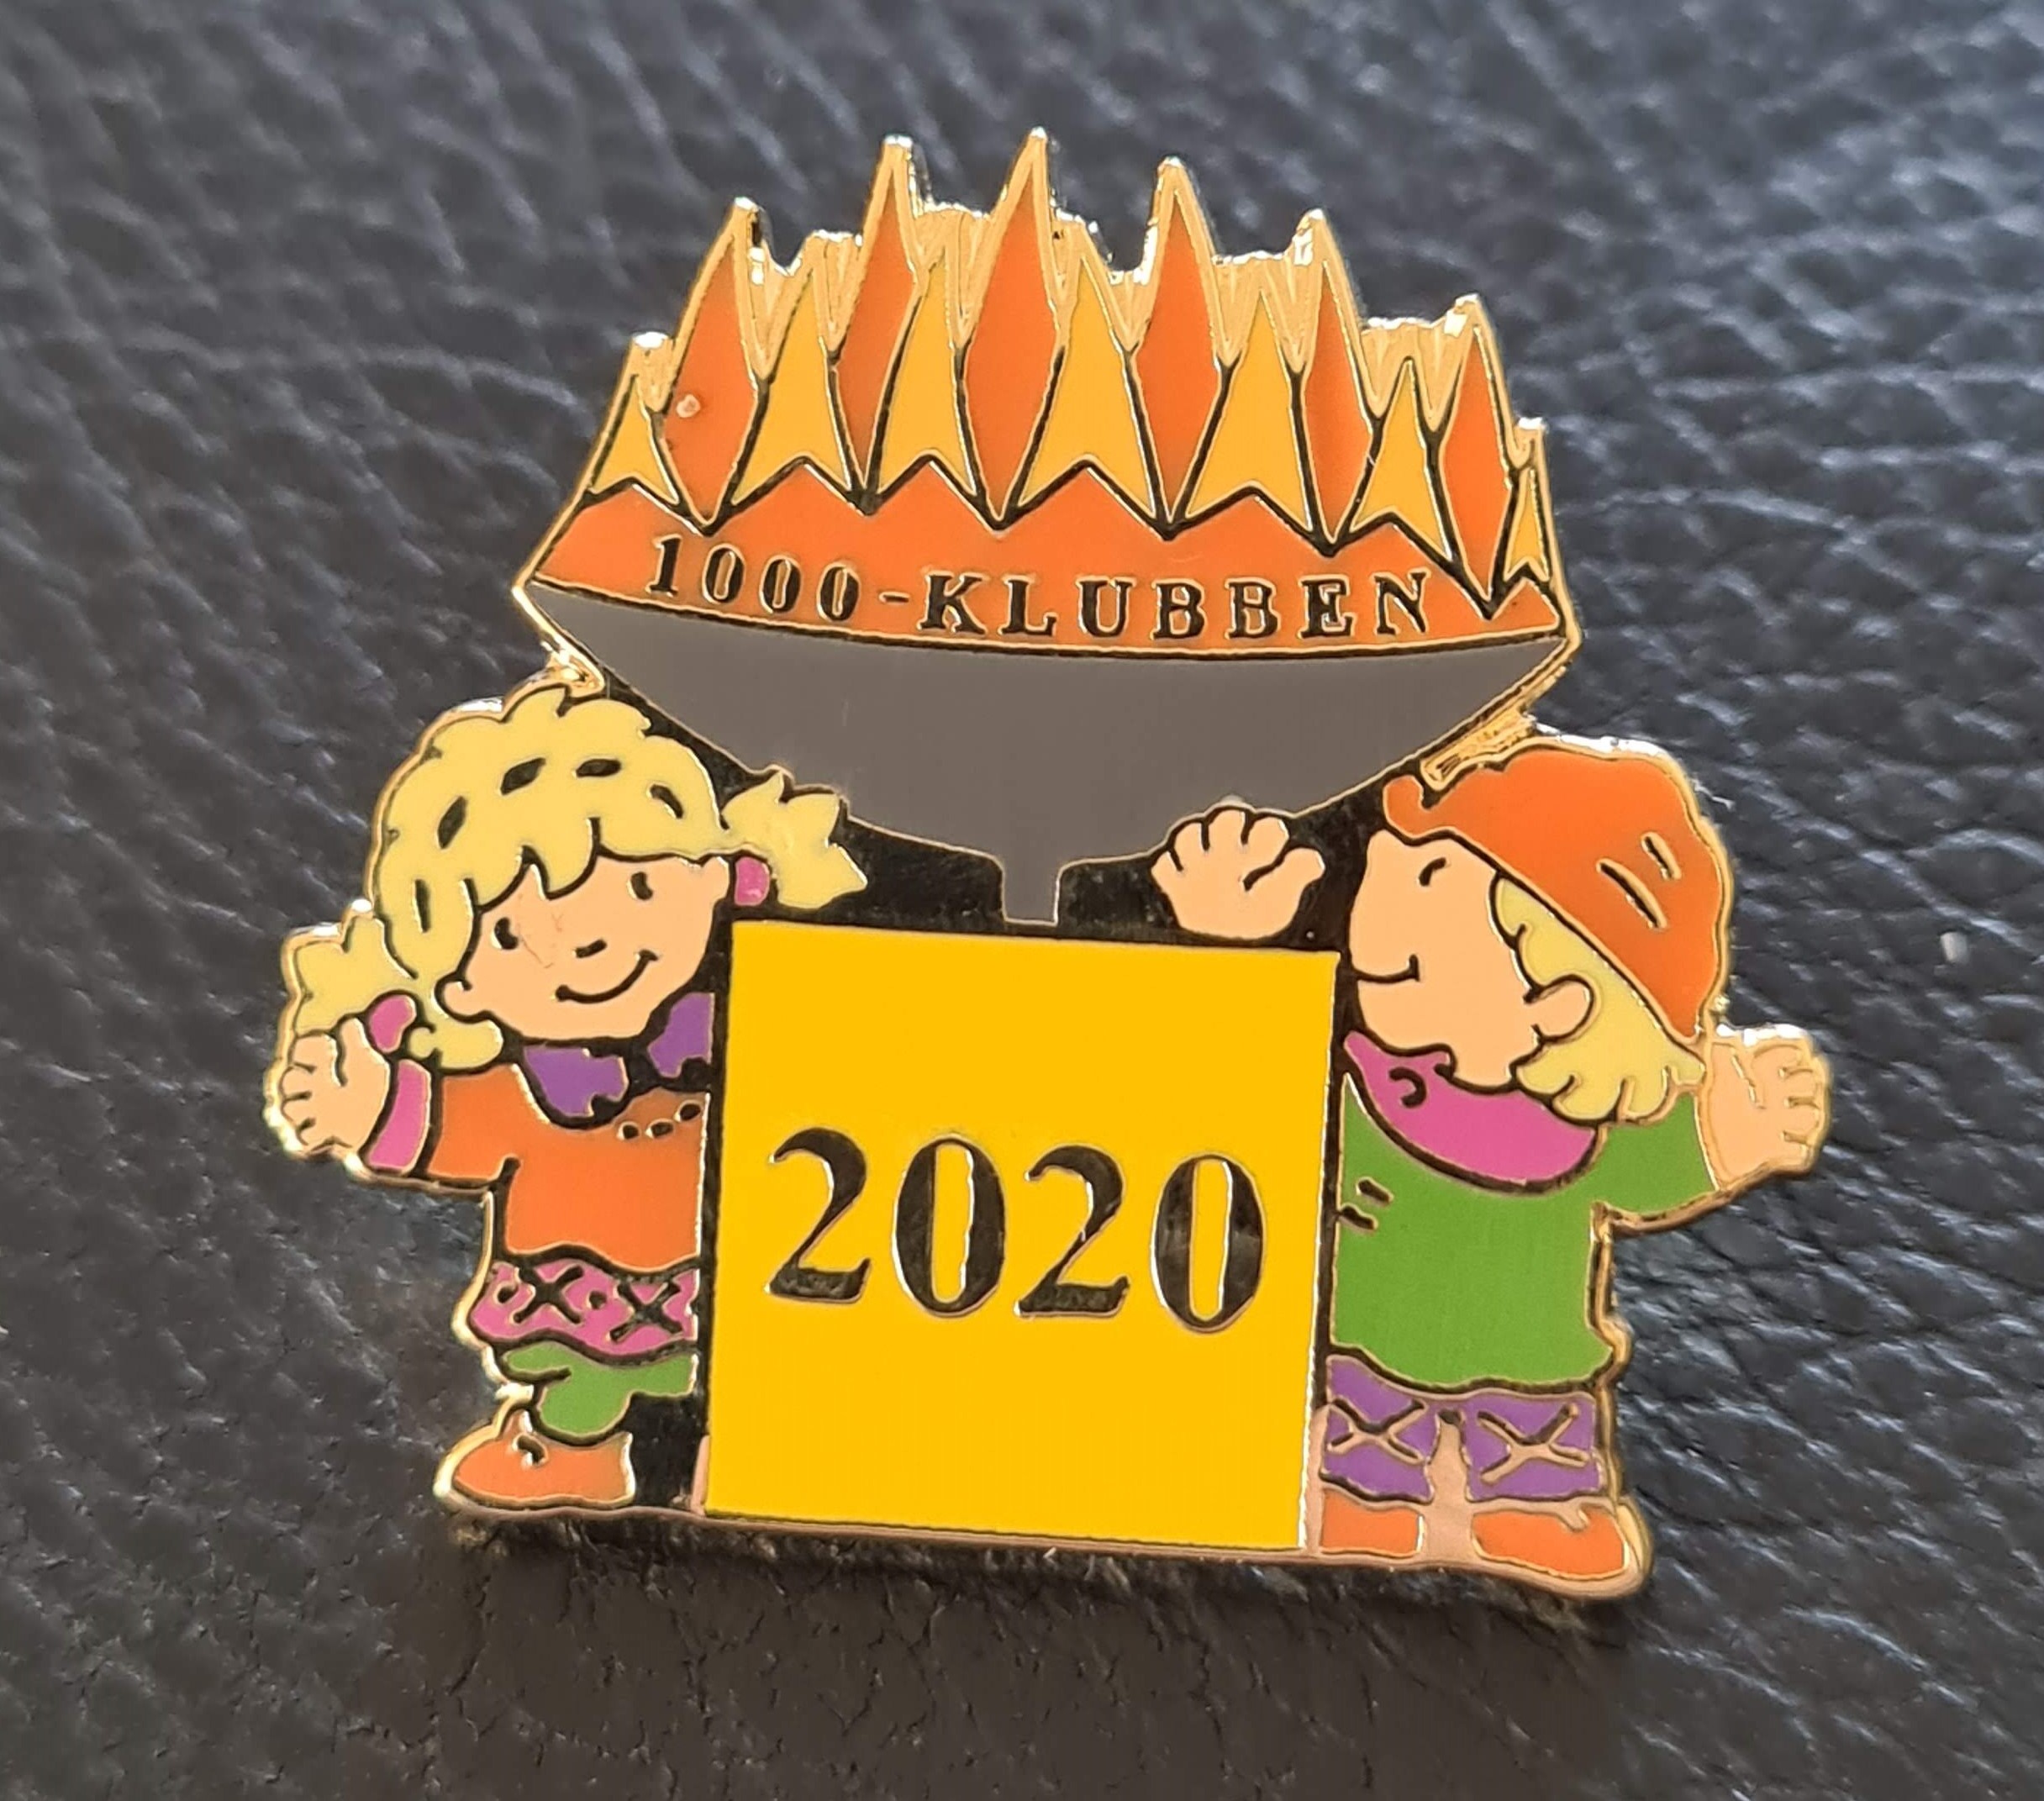 1000-klubben Kristin og Håkon maskotter FIMO 2020 Lillehammer OL